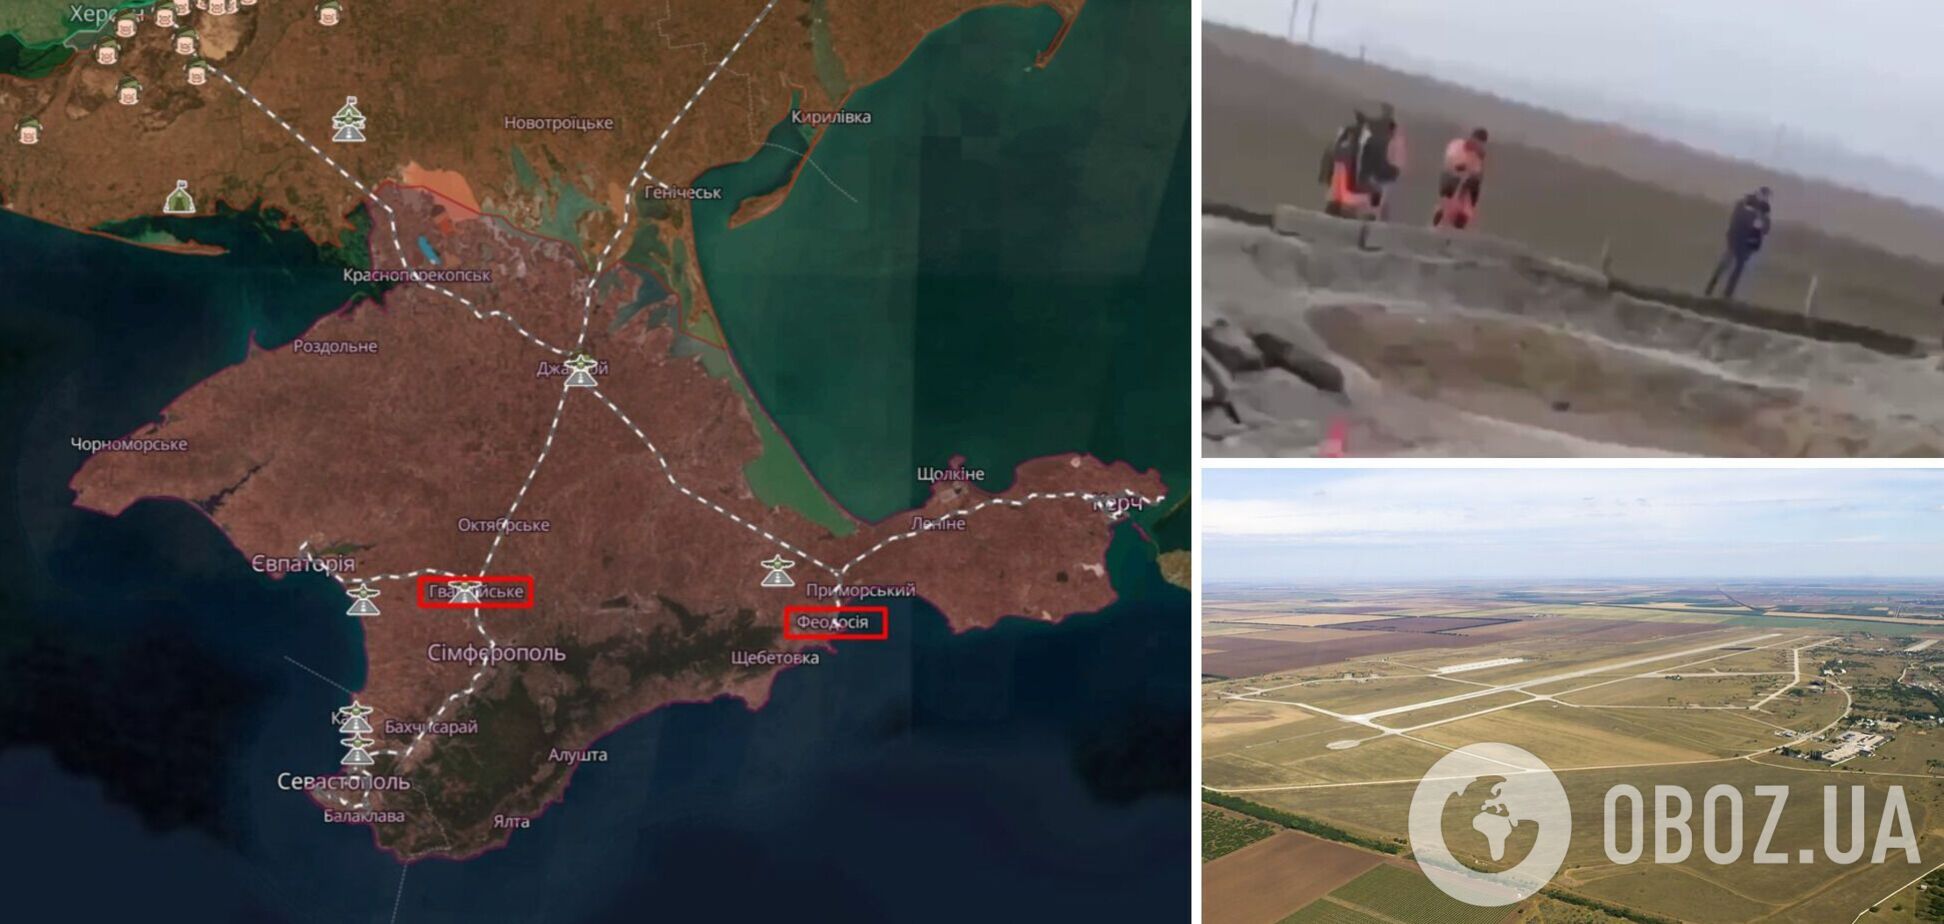 'Бавовна' была мощной: всплыли новые детали последствий атак на Феодосию и авиабазу 'Гвардейское' в Крыму